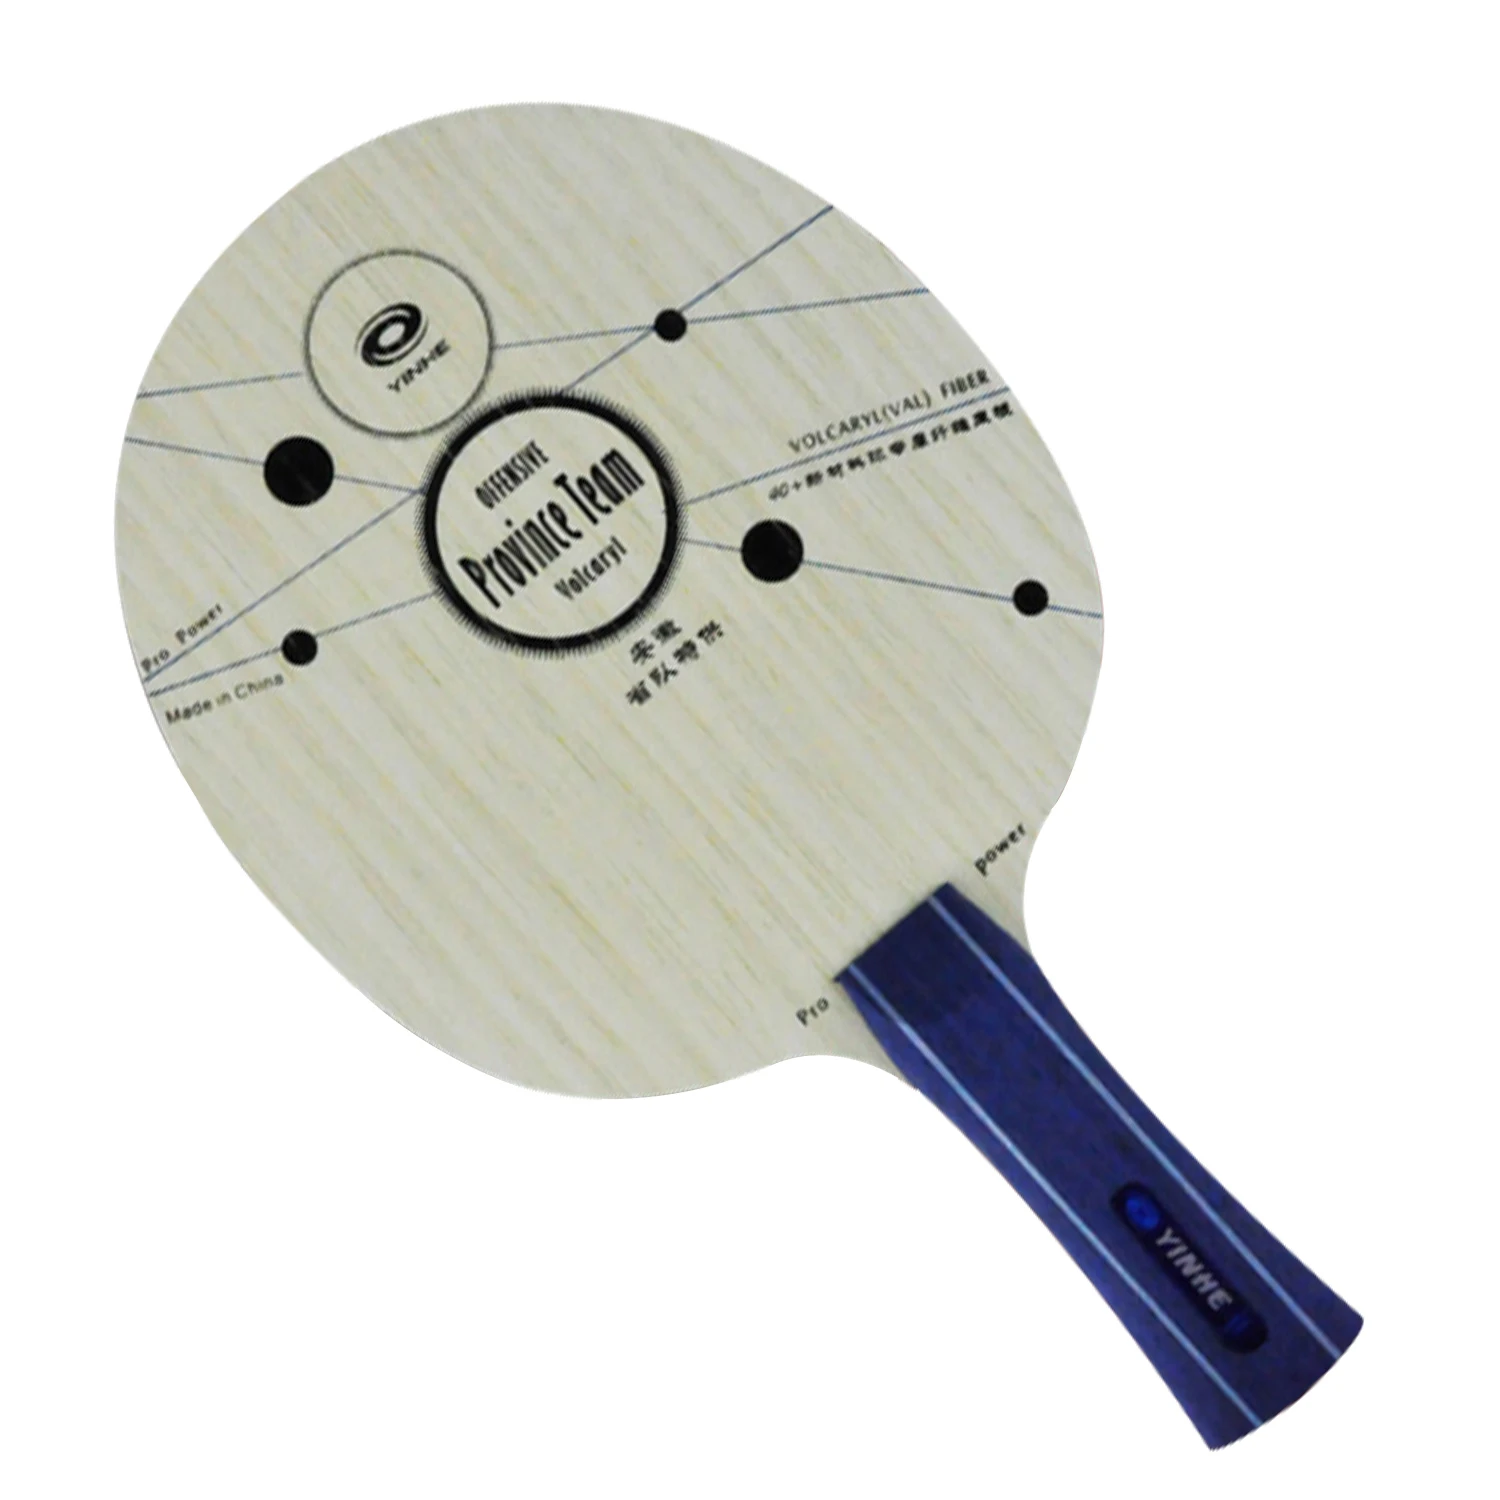 

Оригинальная ракетка для настольного тенниса yinhe PRO-Power Pro-feeling, Хэнань и провинция Аньхой, ракетка для быстрой атаки настольного тенниса